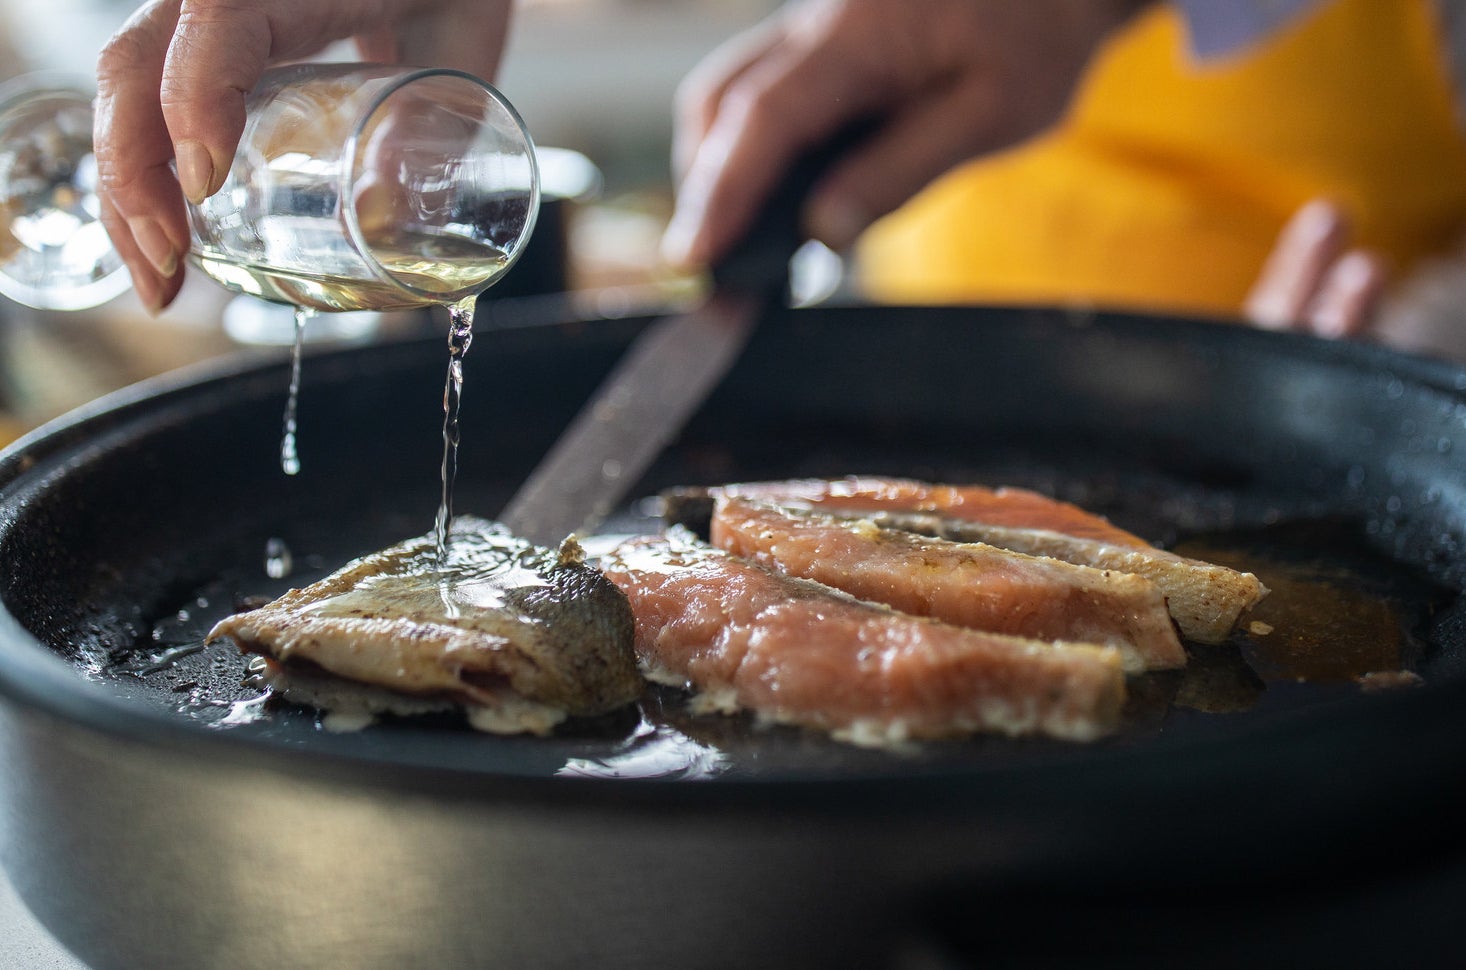 A woman adding white wine while preparing fish